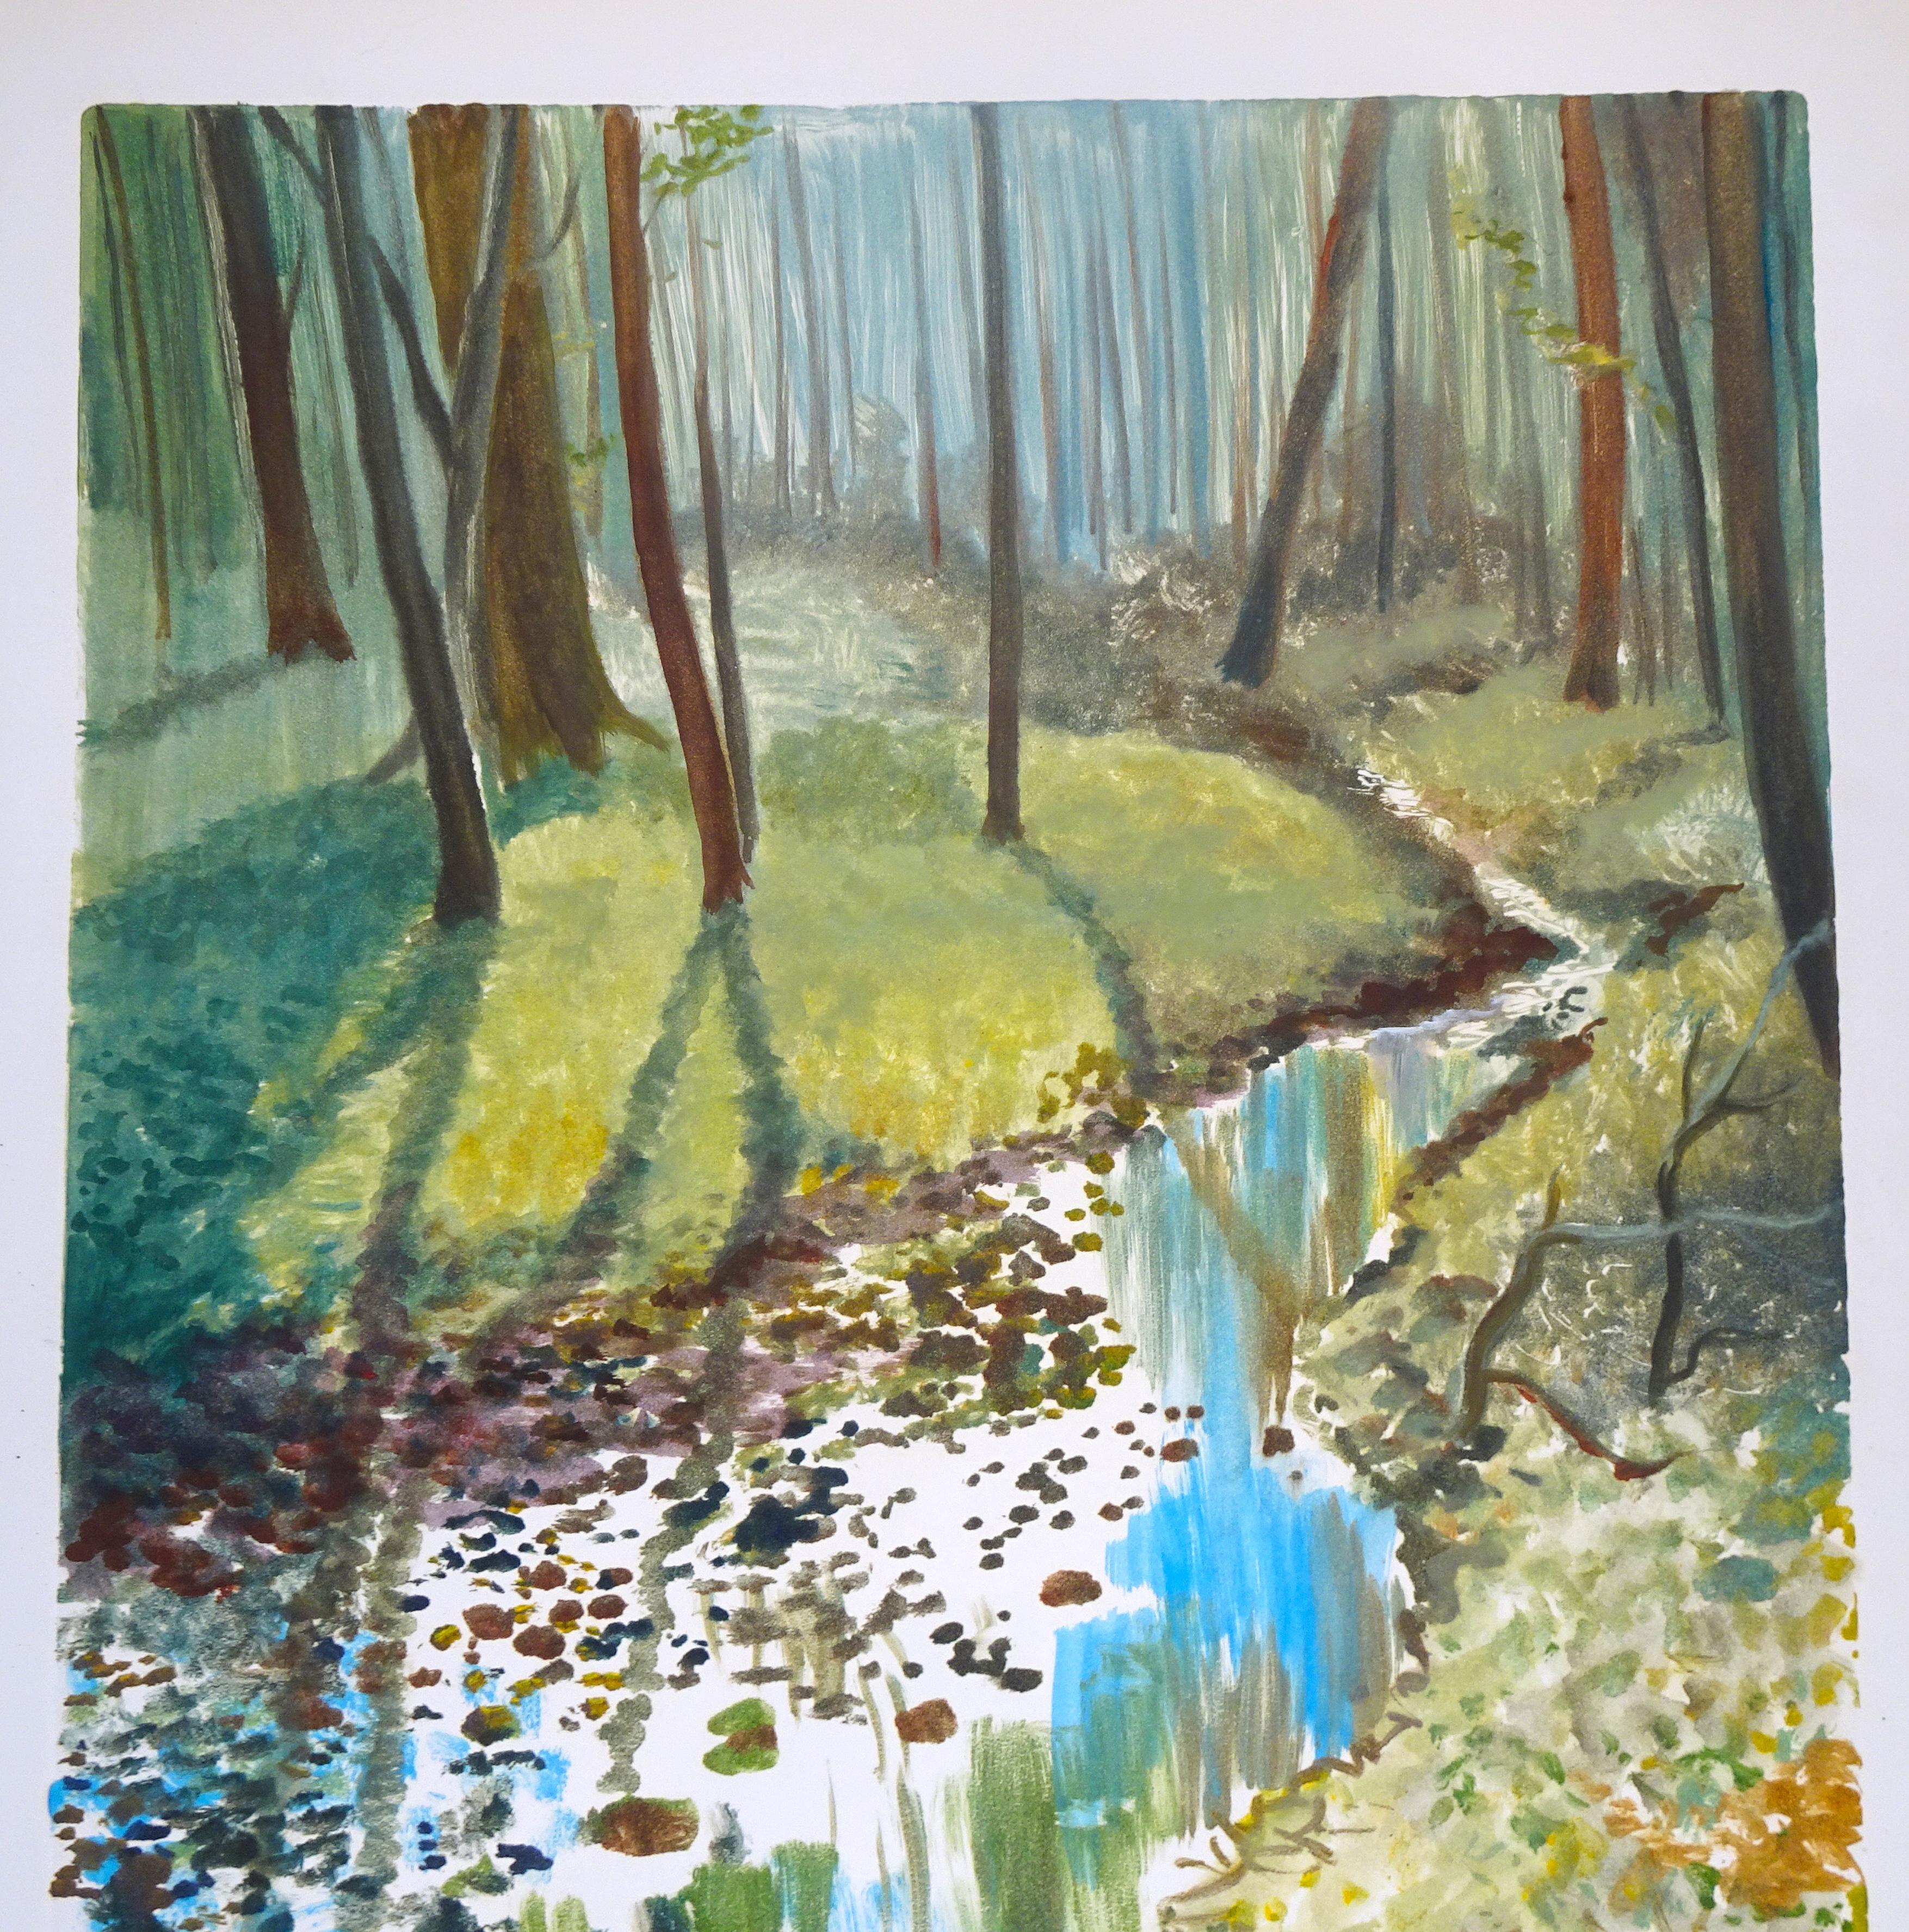 Autumn Landscape - Original Watercolor on Paper by Emile Deschler - 1977 2